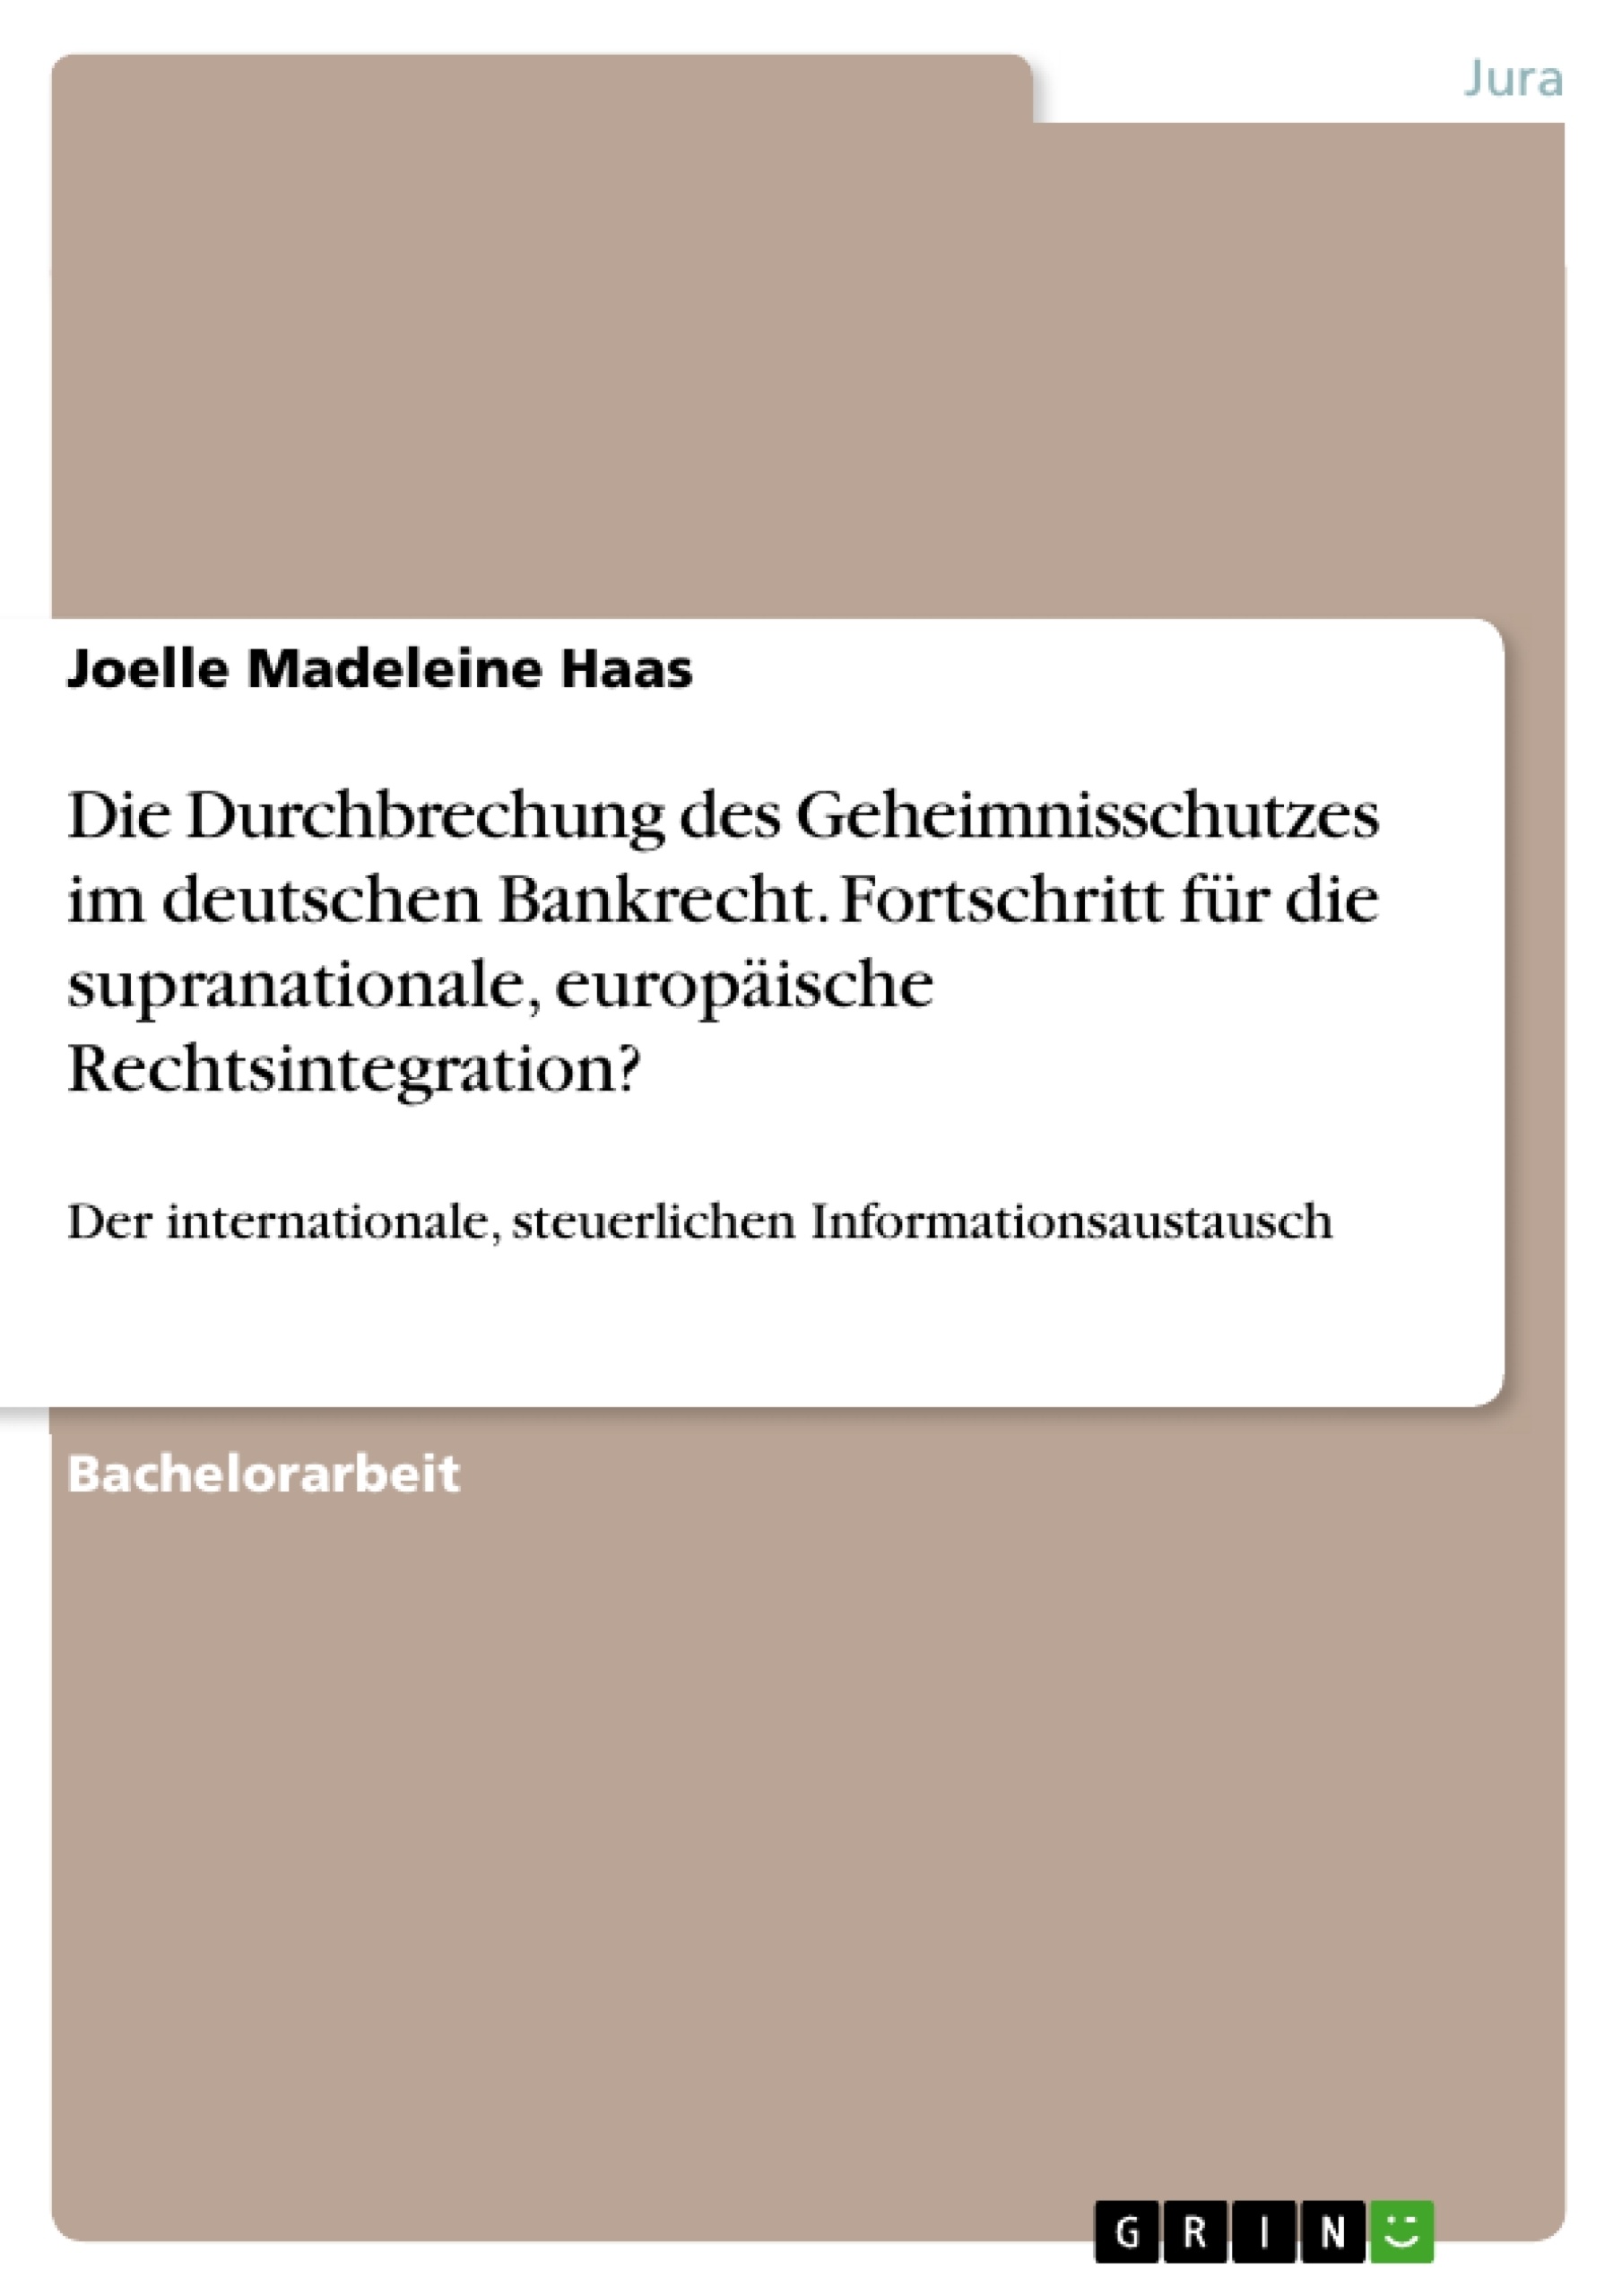 Titre: Die Durchbrechung des Geheimnisschutzes im deutschen Bankrecht. Fortschritt für die supranationale, europäische Rechtsintegration?